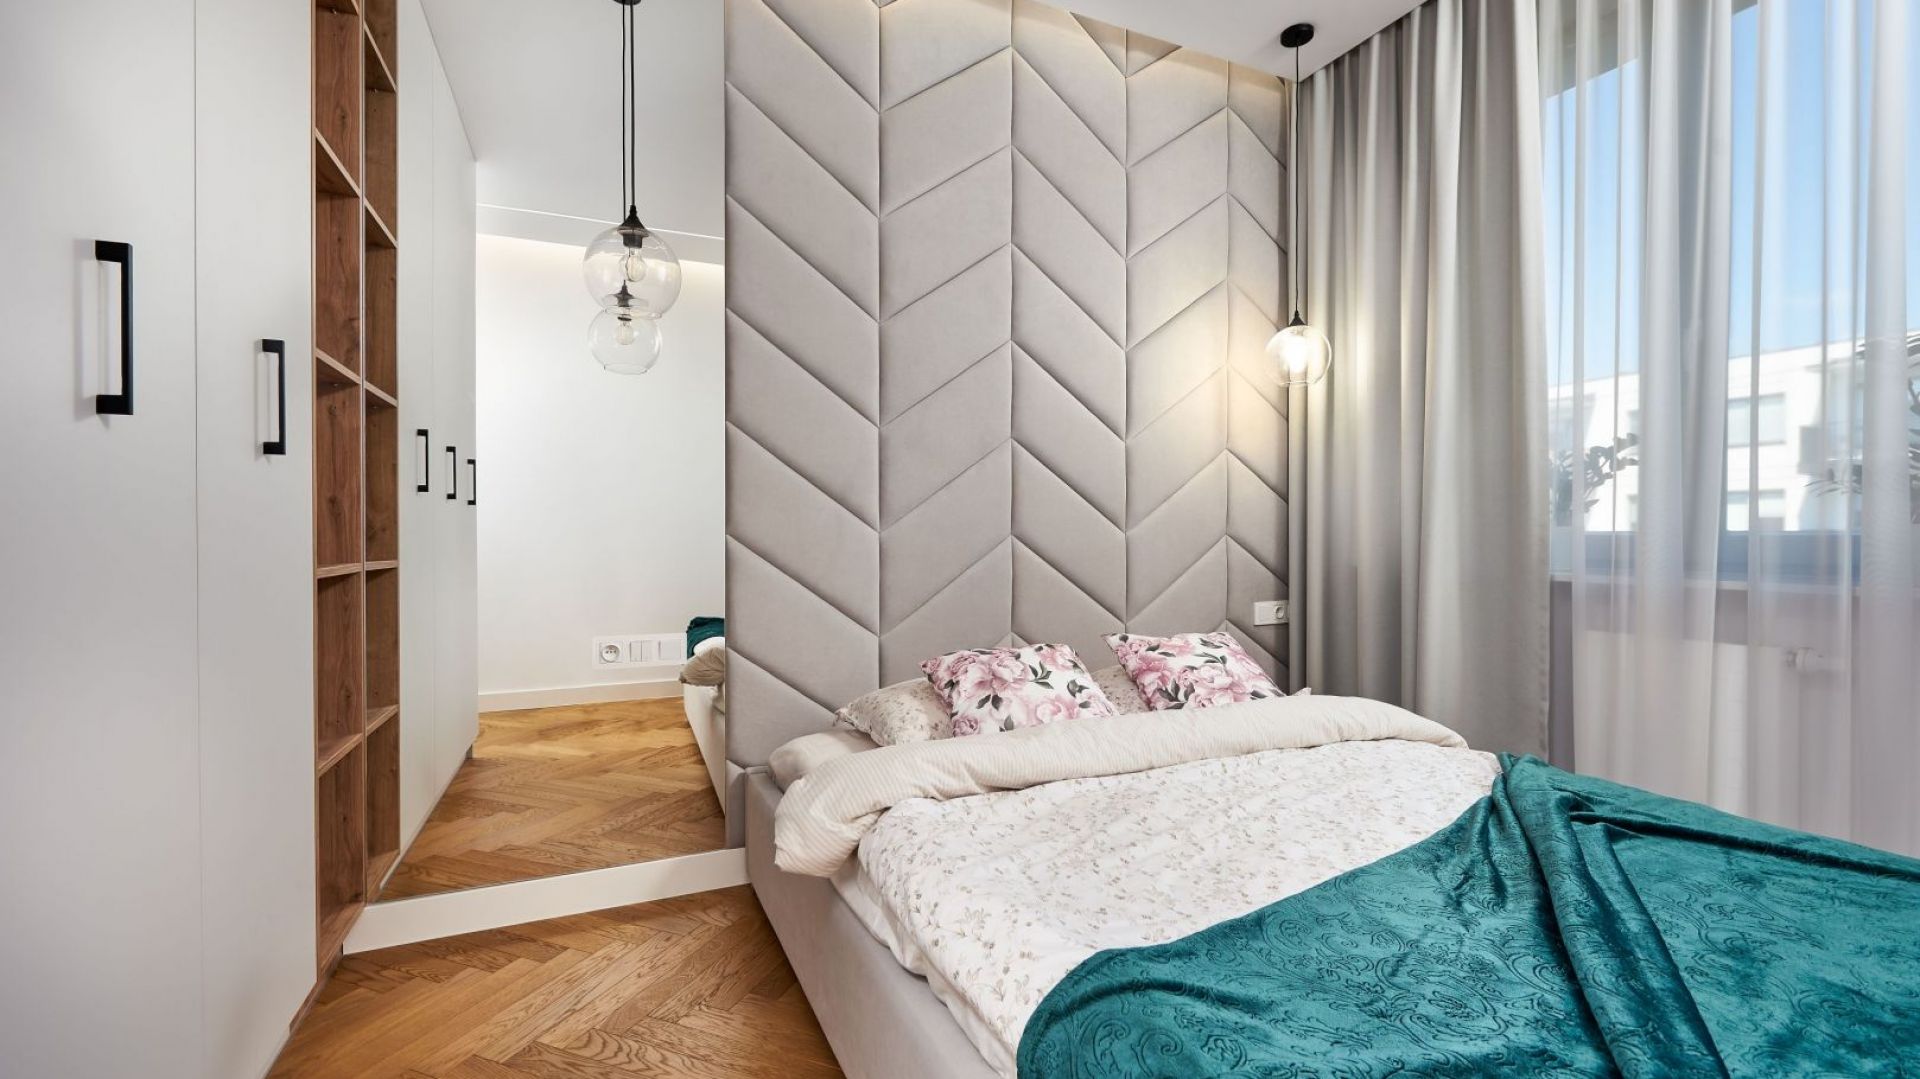 Ściana za łóżkiem w sypialni: 15 ciekawych pomysłów. Zobacz zdjęcia!